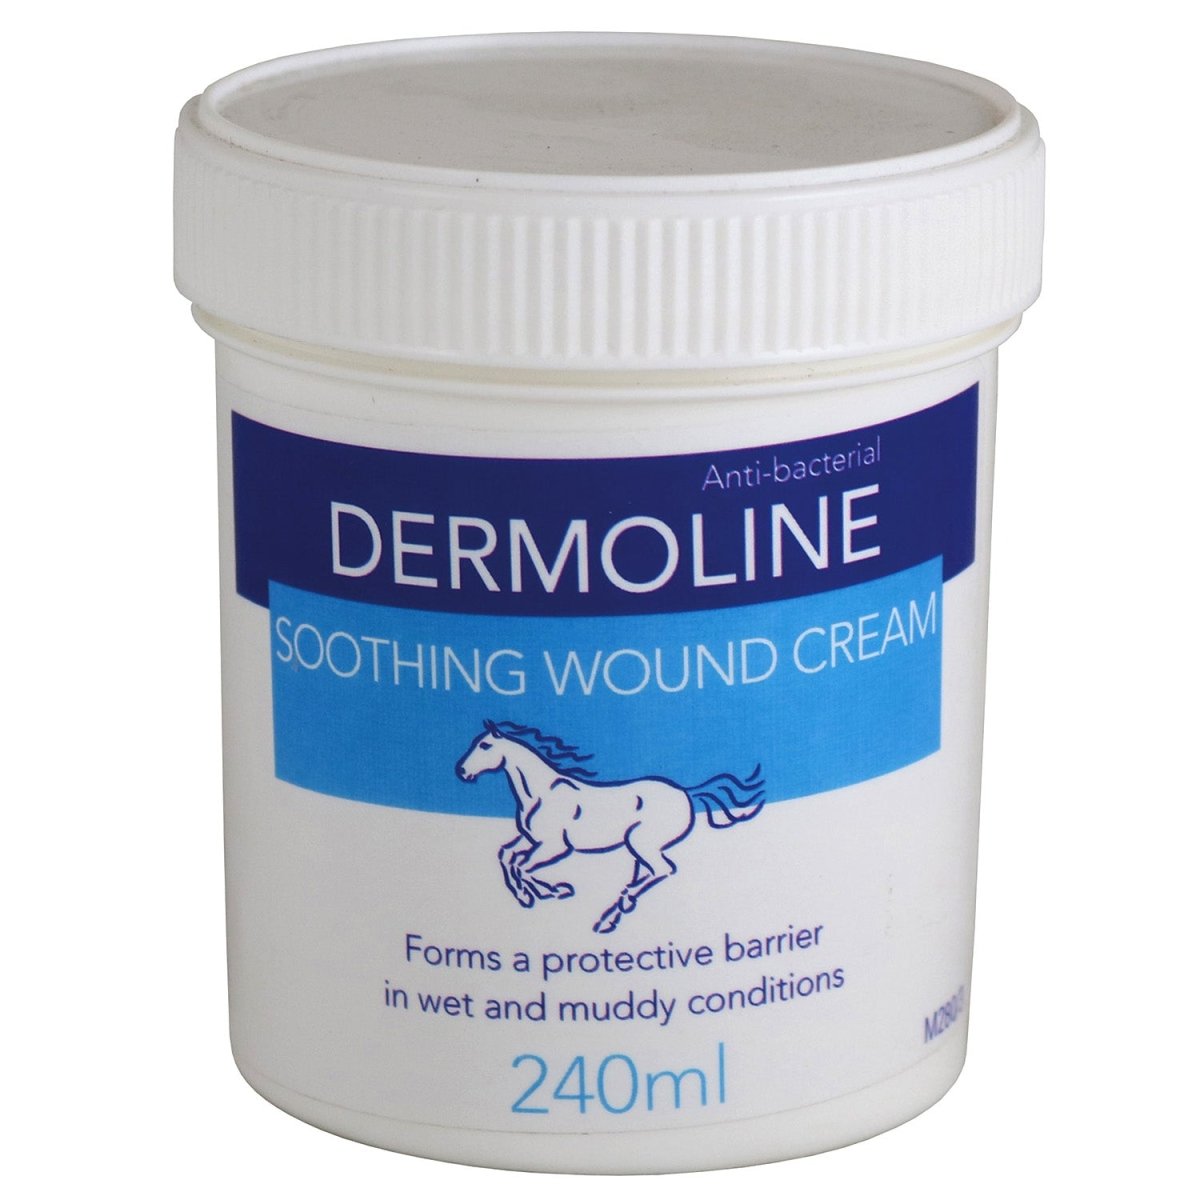 Dermoline Soothing Wound Cream - 240Ml -